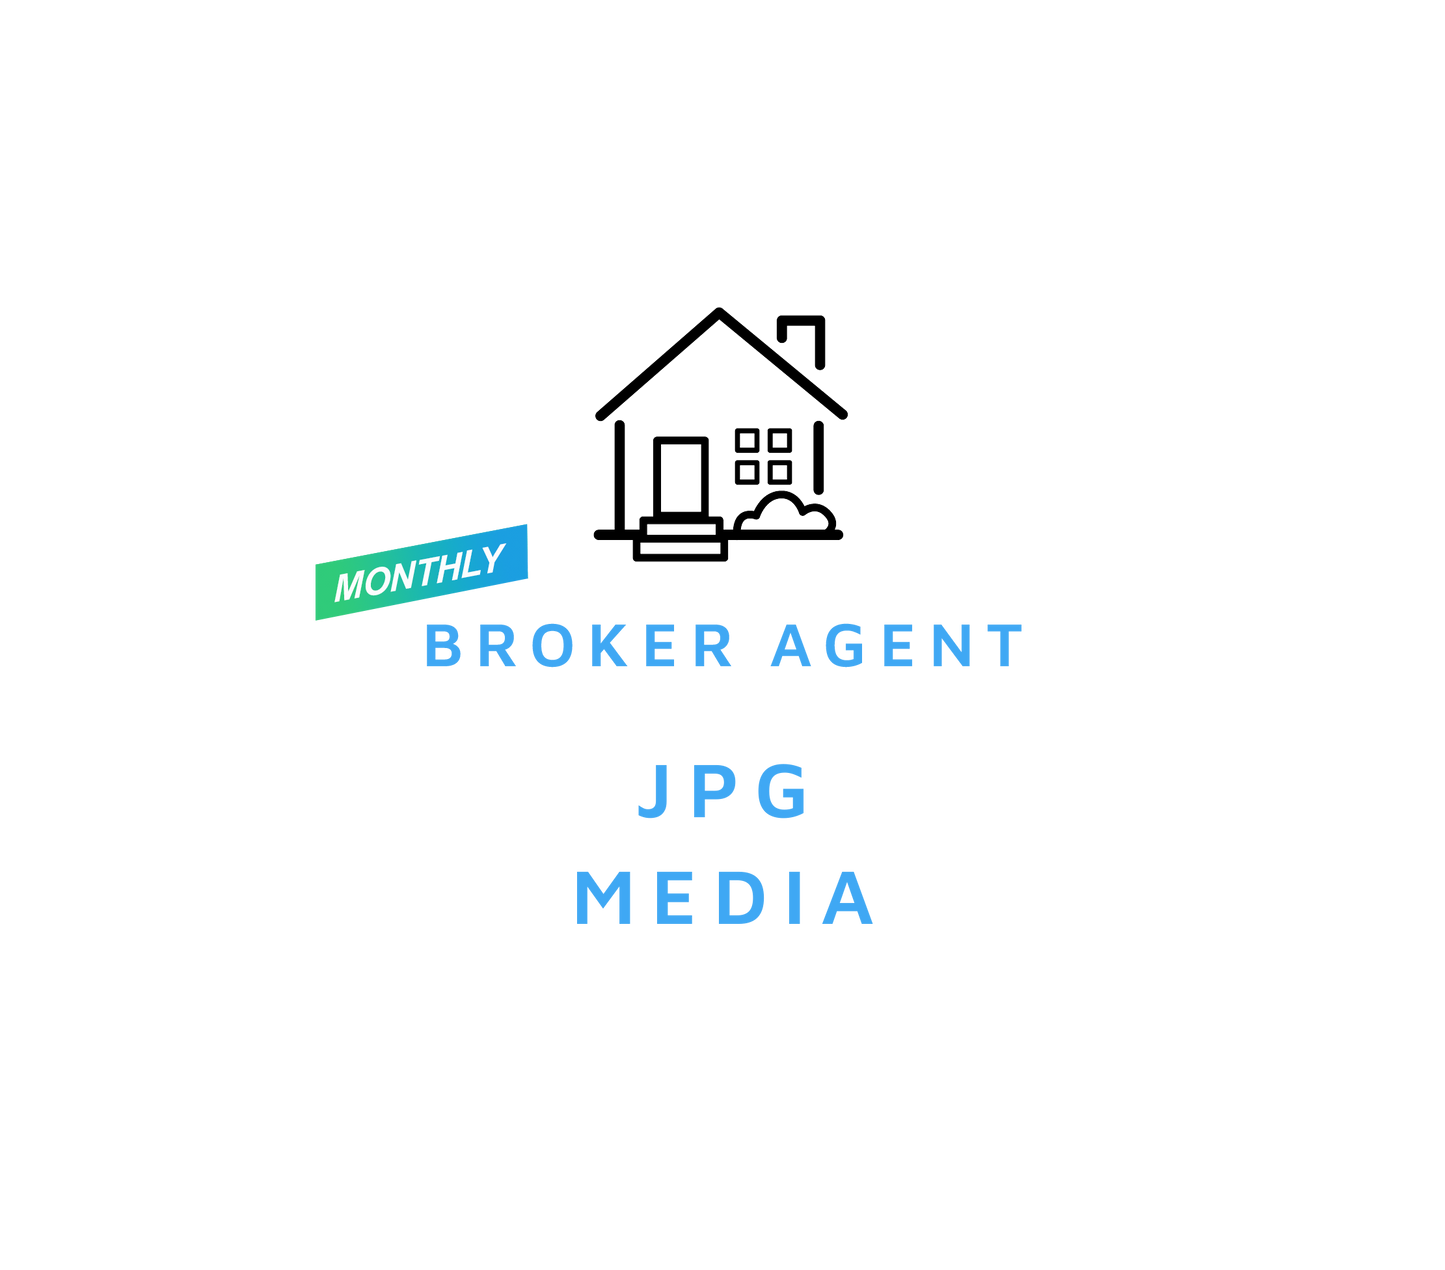 Broker Agent - JPG Media